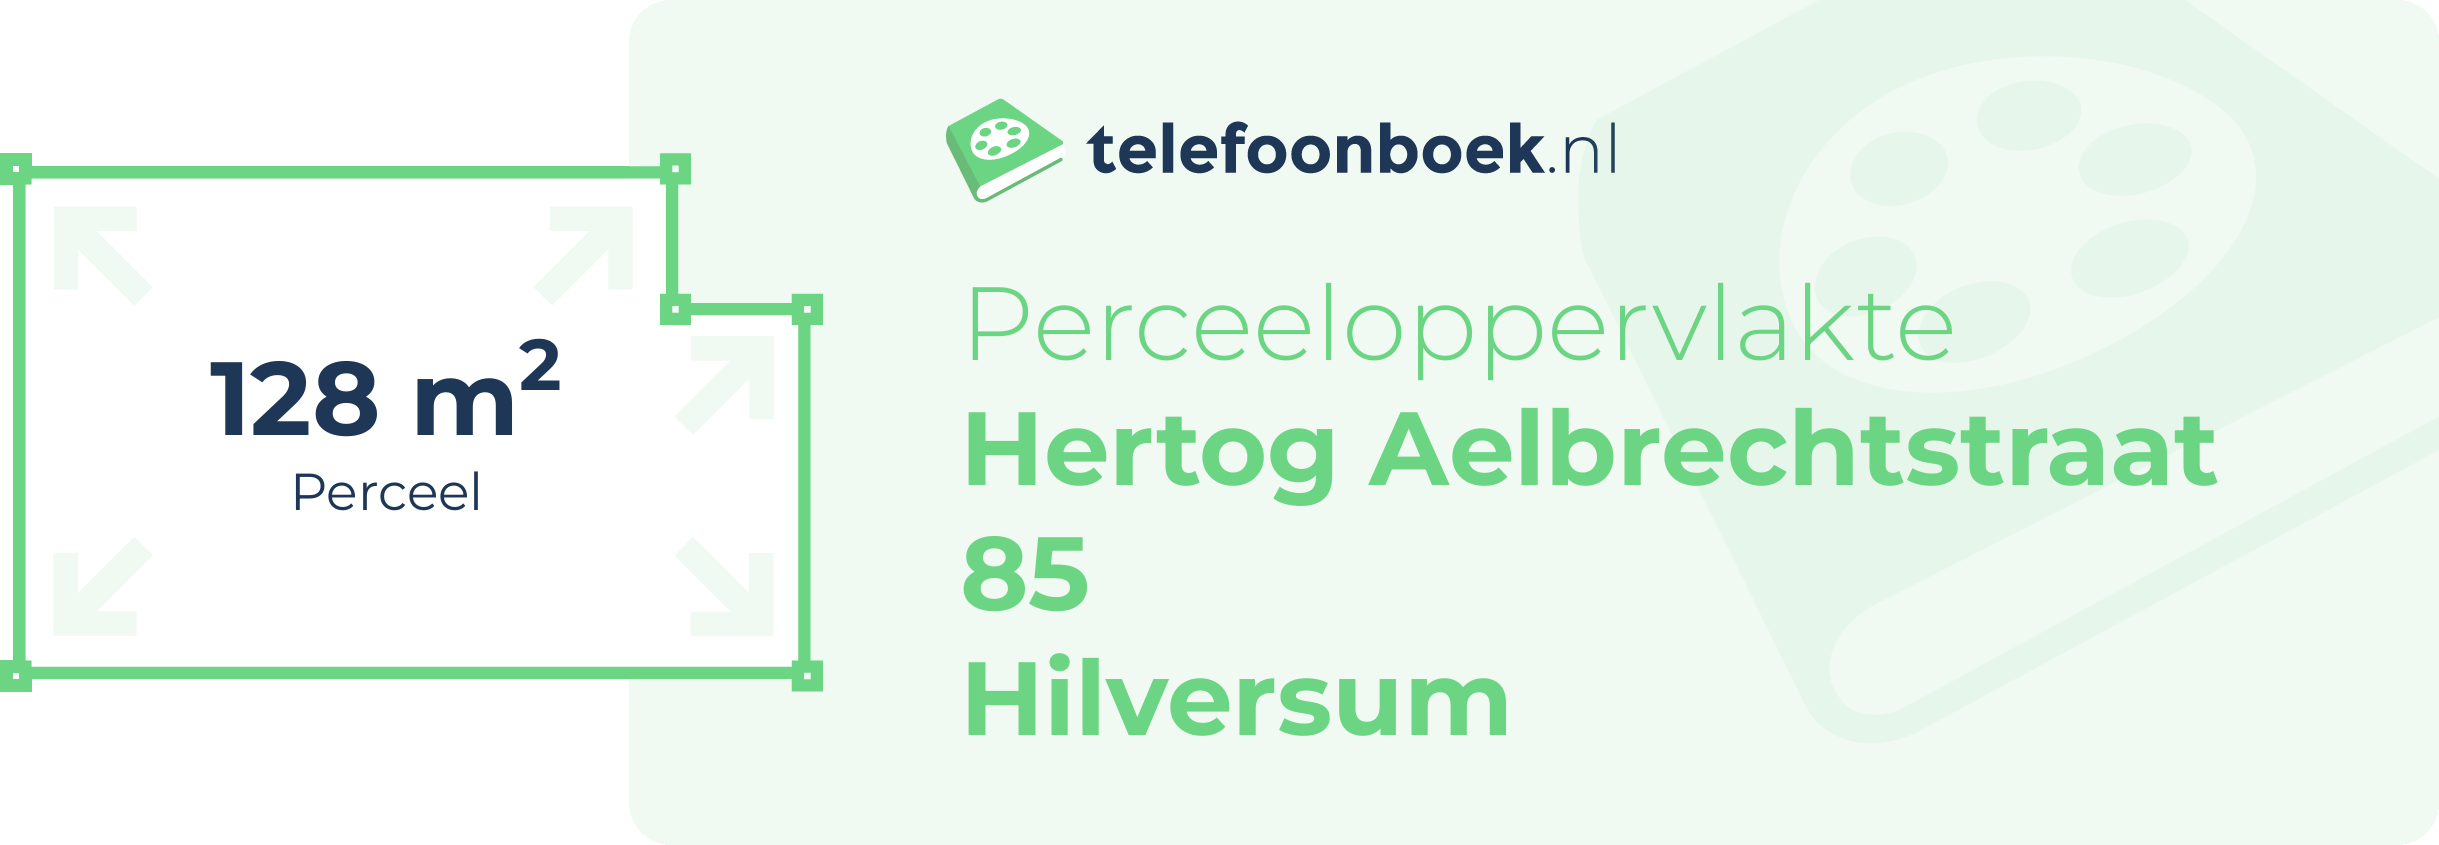 Perceeloppervlakte Hertog Aelbrechtstraat 85 Hilversum